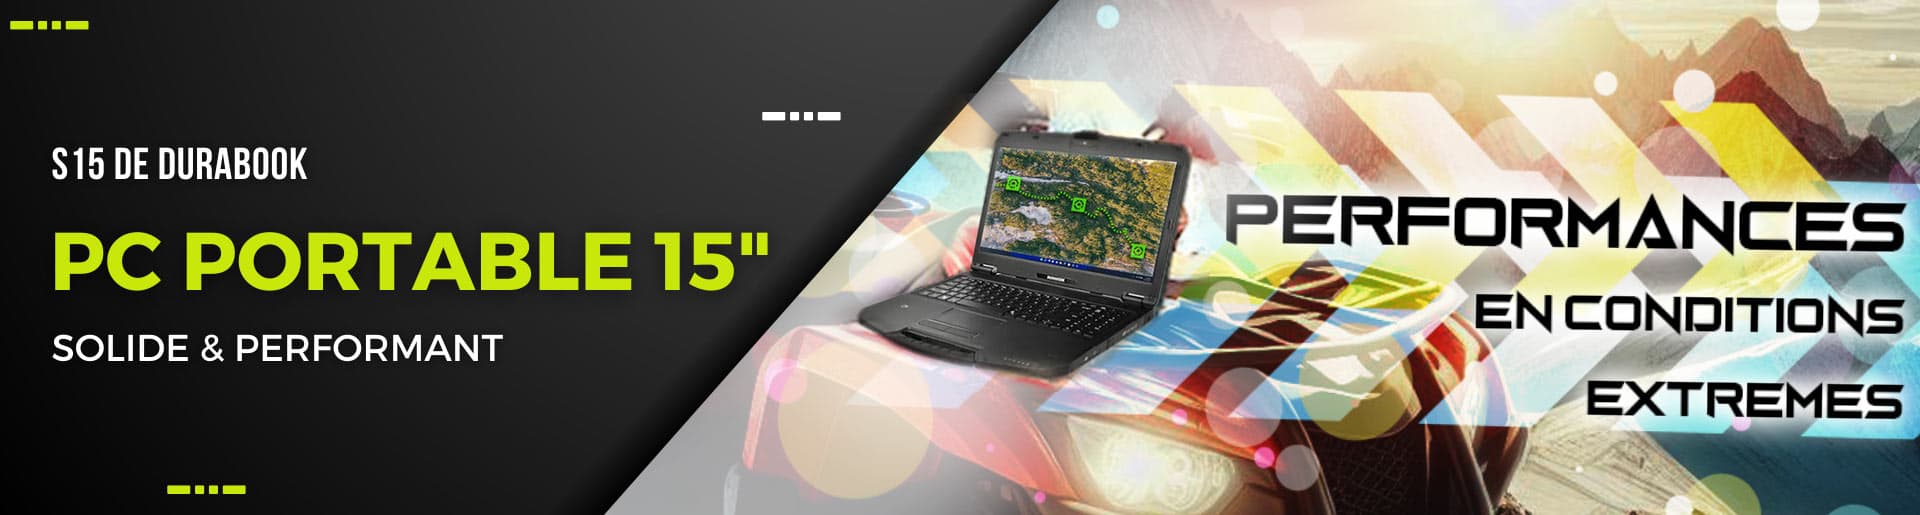 Nouveau ! Le S15 Durabook, un PC portable durci 15 pouces, performant, avec pavé numérique !